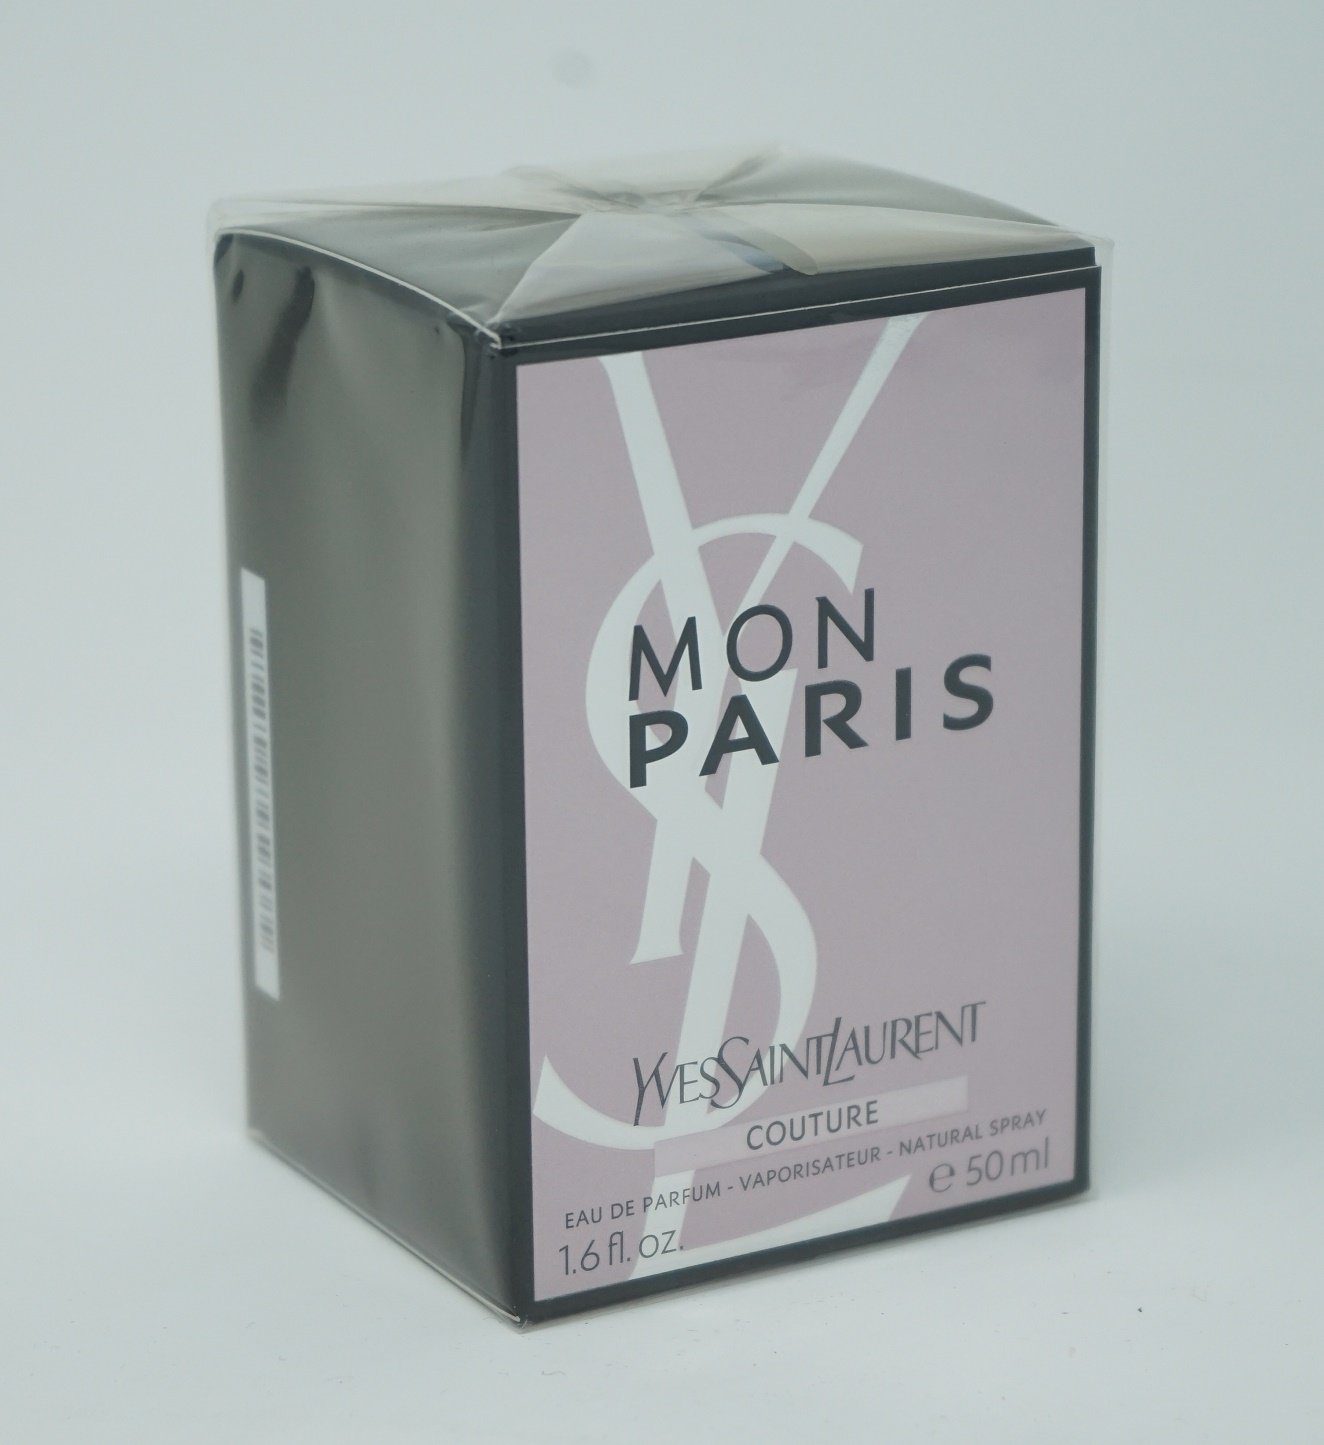 YVES SAINT LAURENT Eau de Parfum Yves Saint Laurent Mon Paris Couture Eau de Parfum Spray 50ml